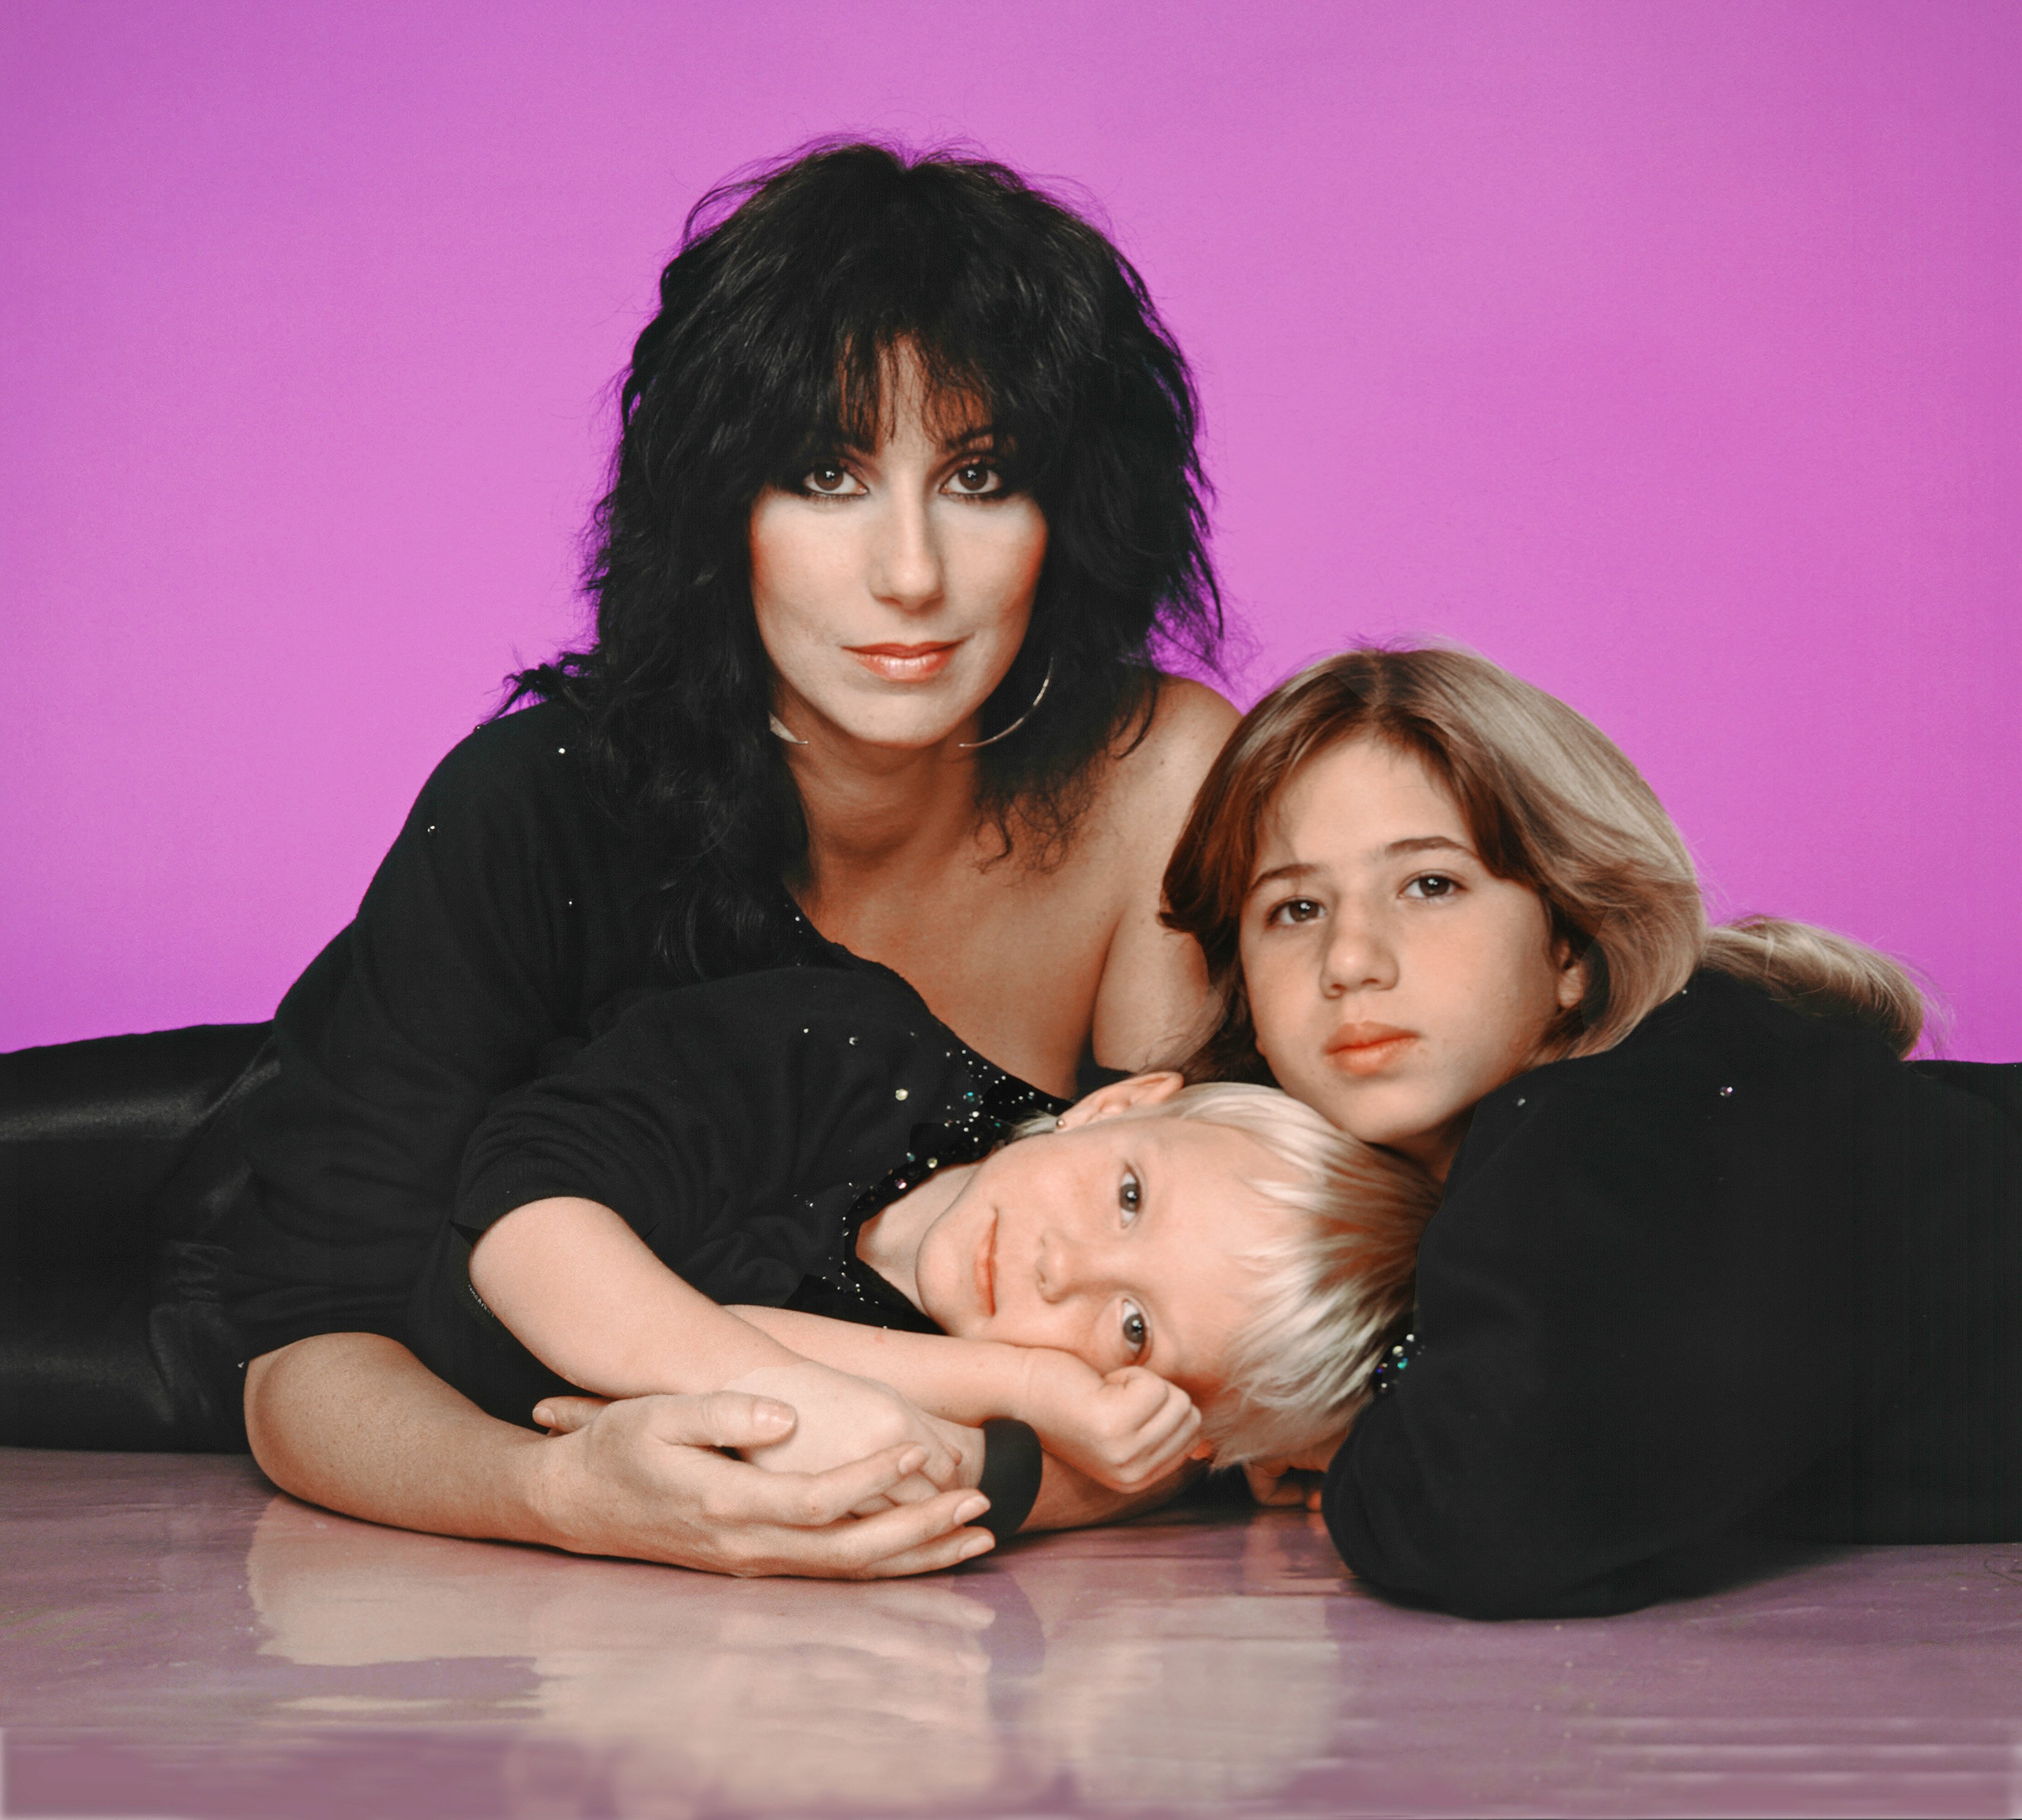 Cher avec ses enfants Chastity Bono et Elijah Allman le 1er janvier 1980 à Los Angeles, Californie | Source : Getty images